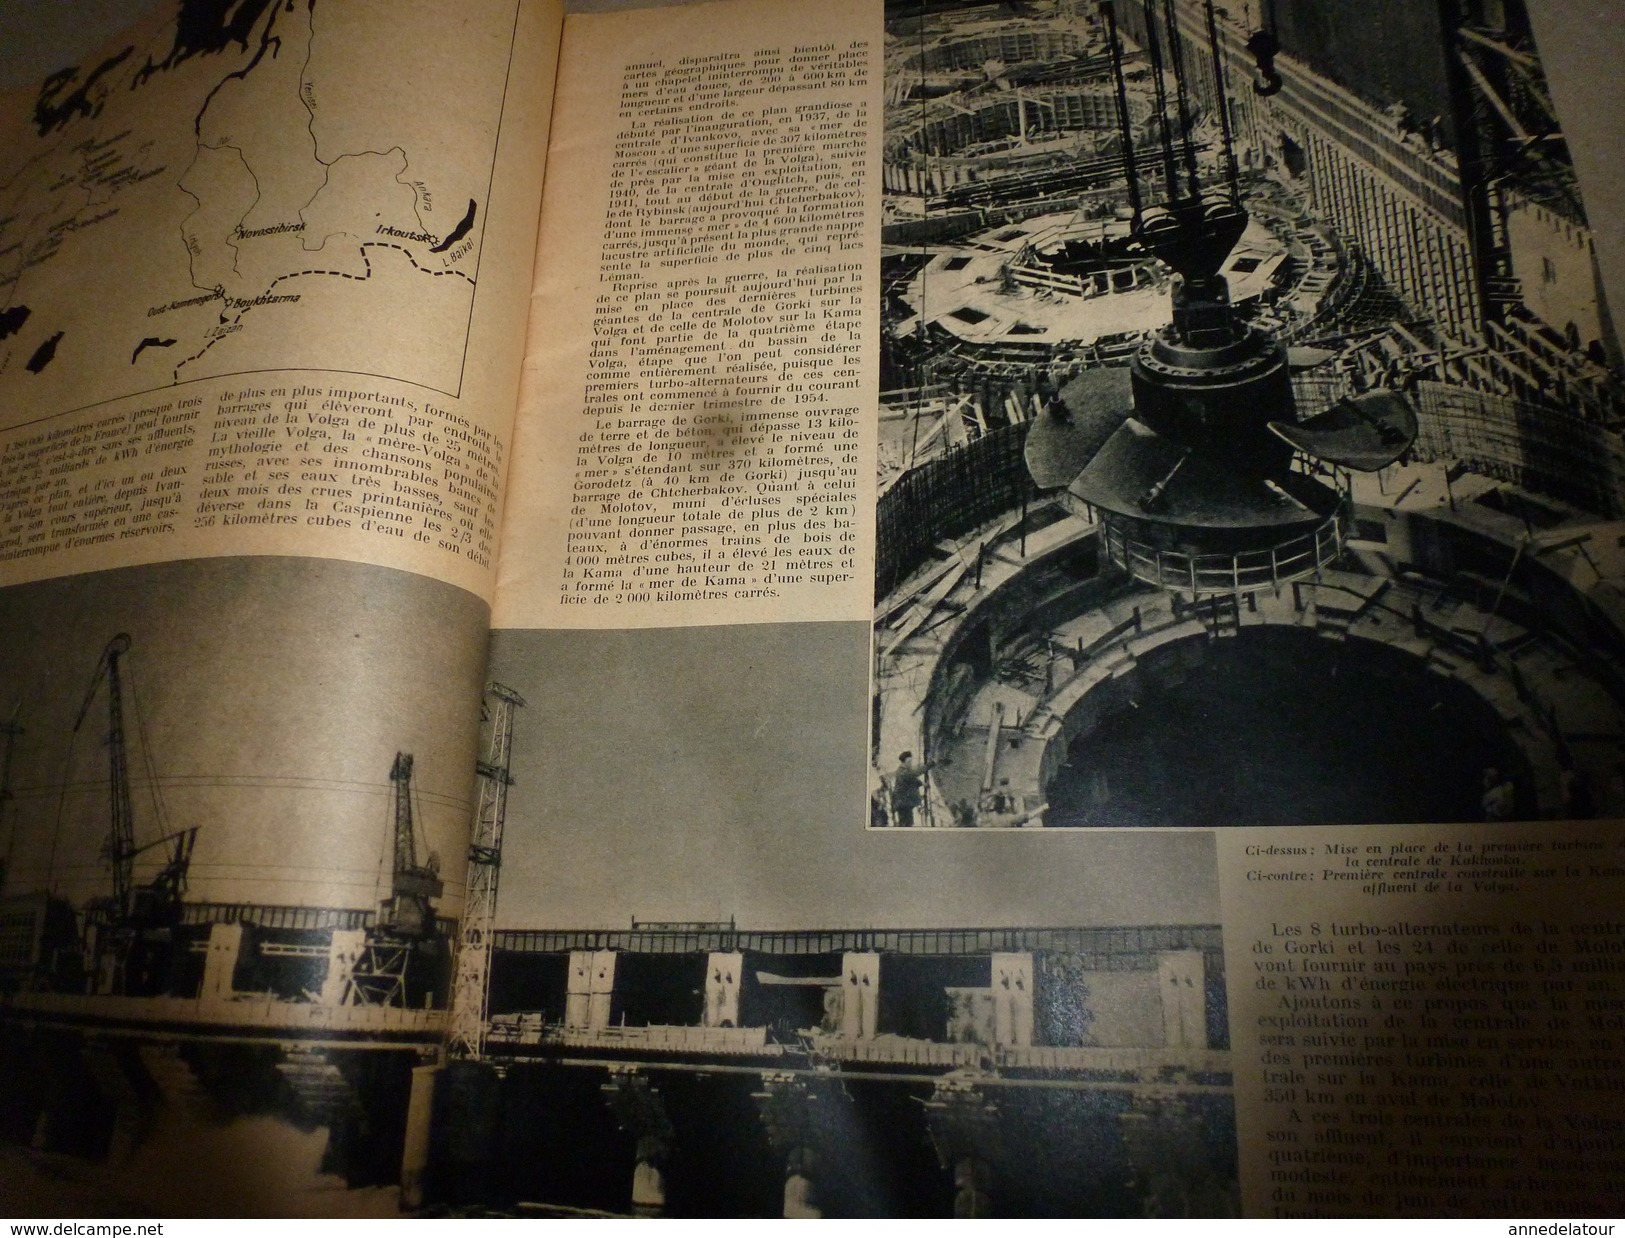 1955 SETA : Plans Centrales Atomiques;Avion LE CARAVELLE;L'HYDRO-ELECTRIQUE De Russie;Trains Télécommandés;Entomologie - Wissenschaft